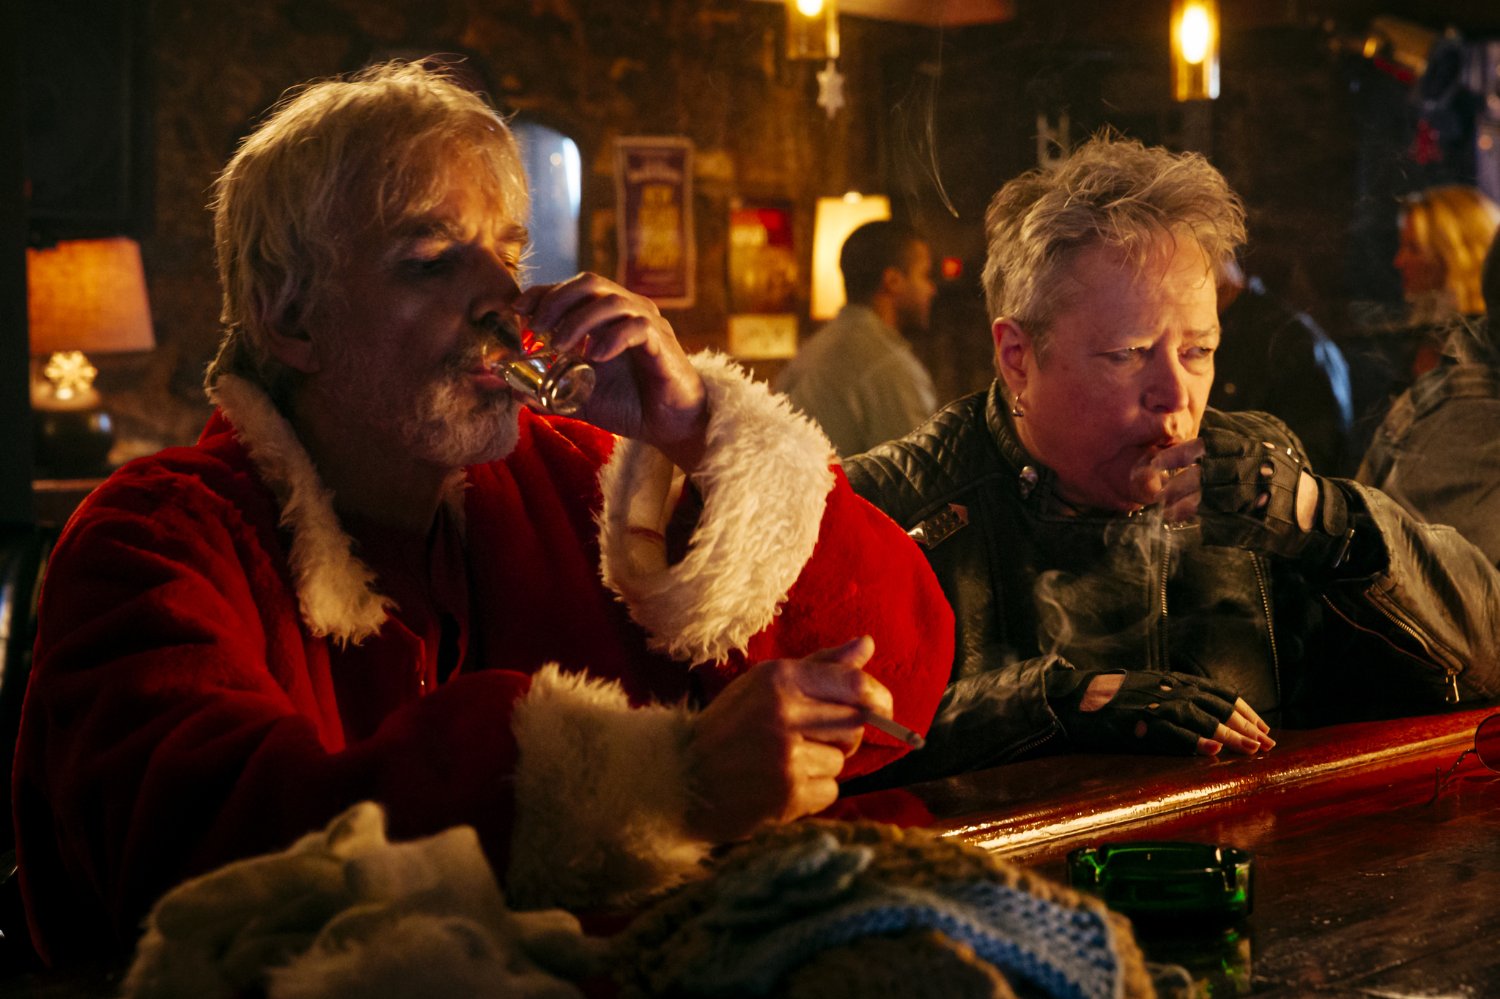 Кадр из фильма "Плохой Санта 2". Страница персоны Кэти Бейтс. 